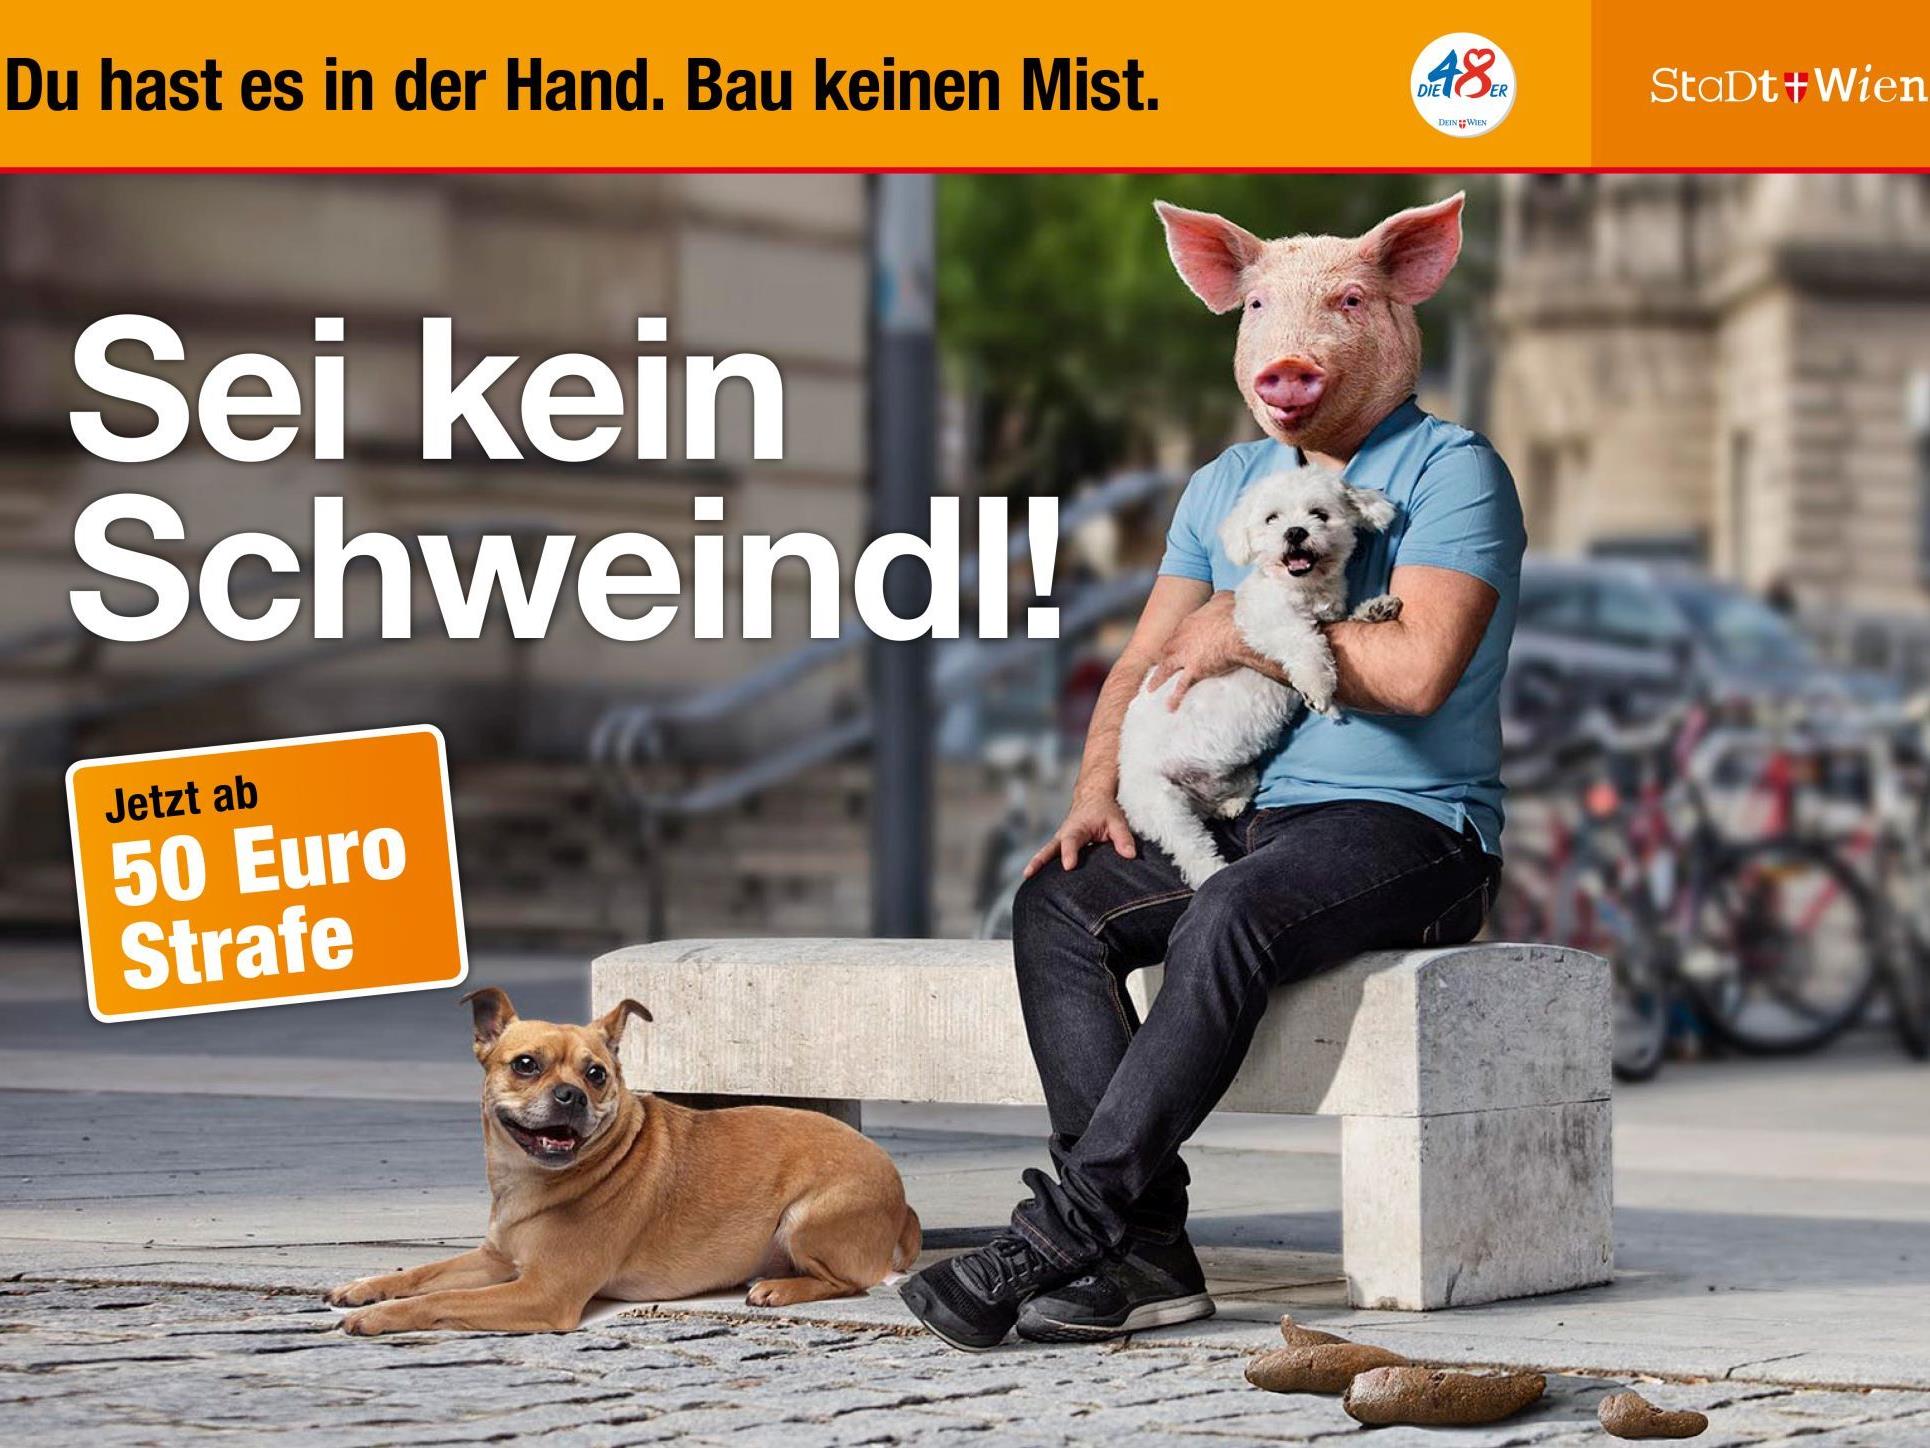 Neue Sauberkeits-Kampagne der Stadt Wien.